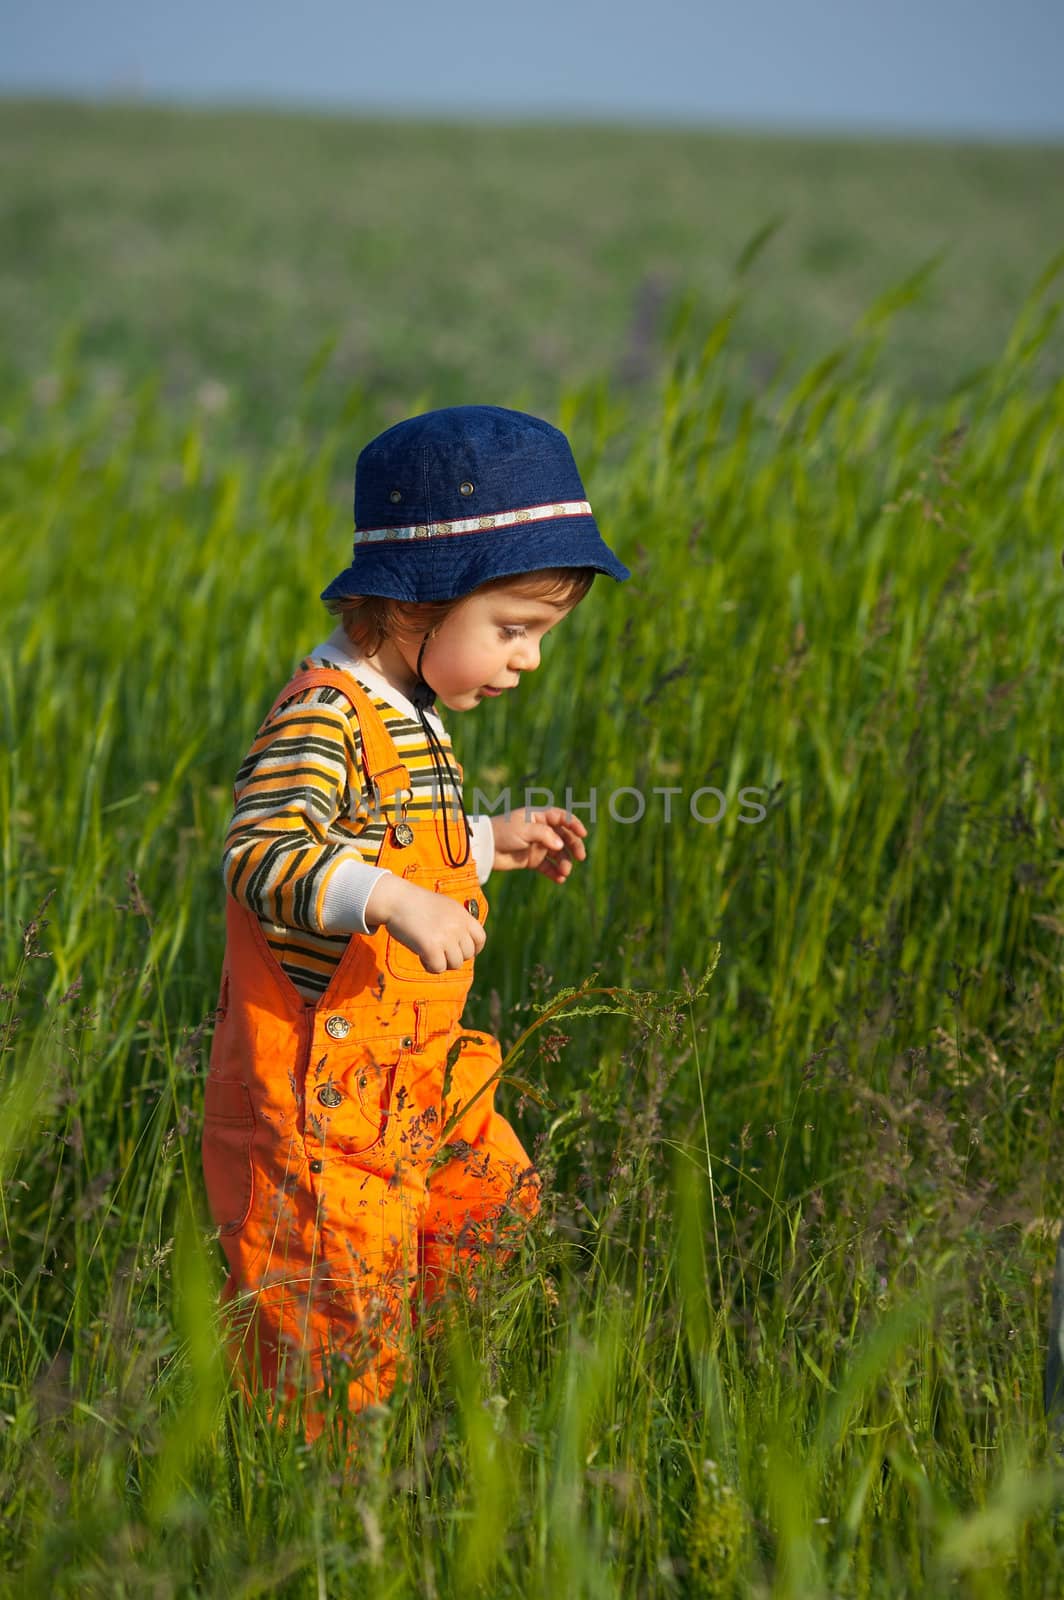 Little boy walking in a green grass at sunset light